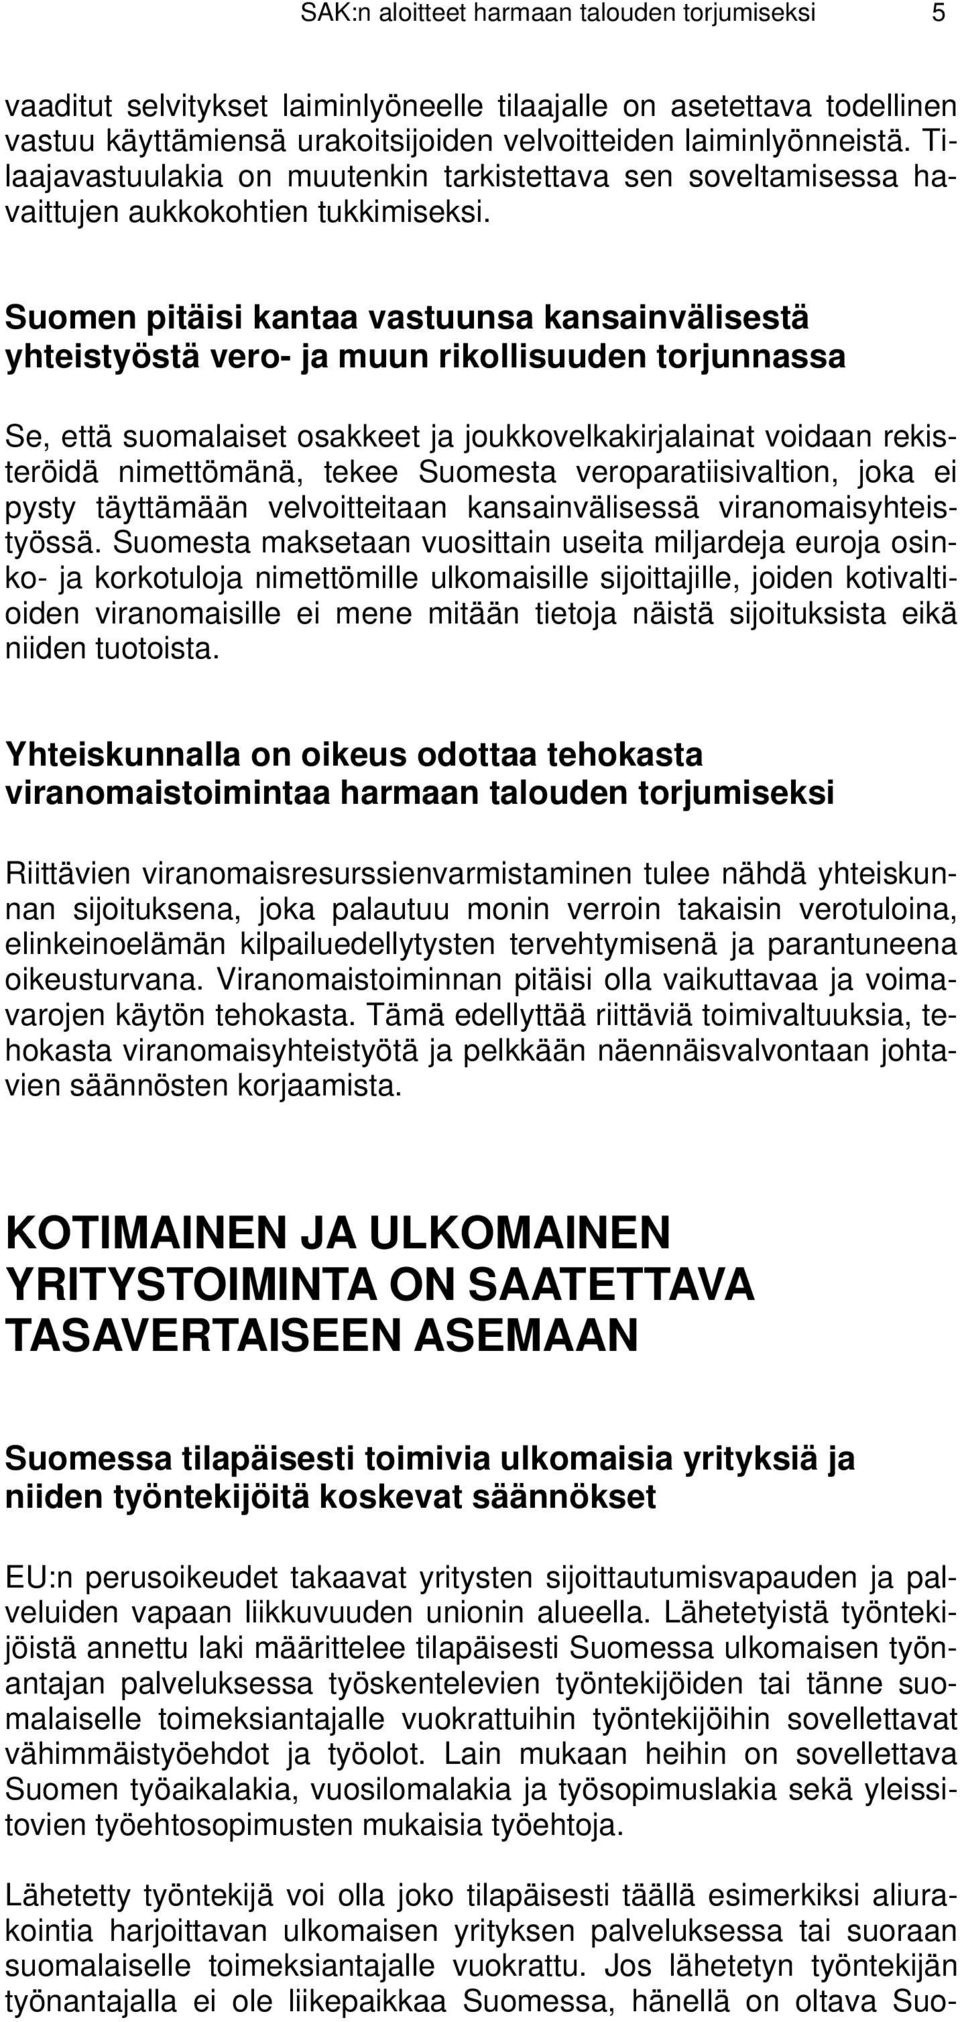 Suomen pitäisi kantaa vastuunsa kansainvälisestä yhteistyöstä vero- ja muun rikollisuuden torjunnassa Se, että suomalaiset osakkeet ja joukkovelkakirjalainat voidaan rekisteröidä nimettömänä, tekee